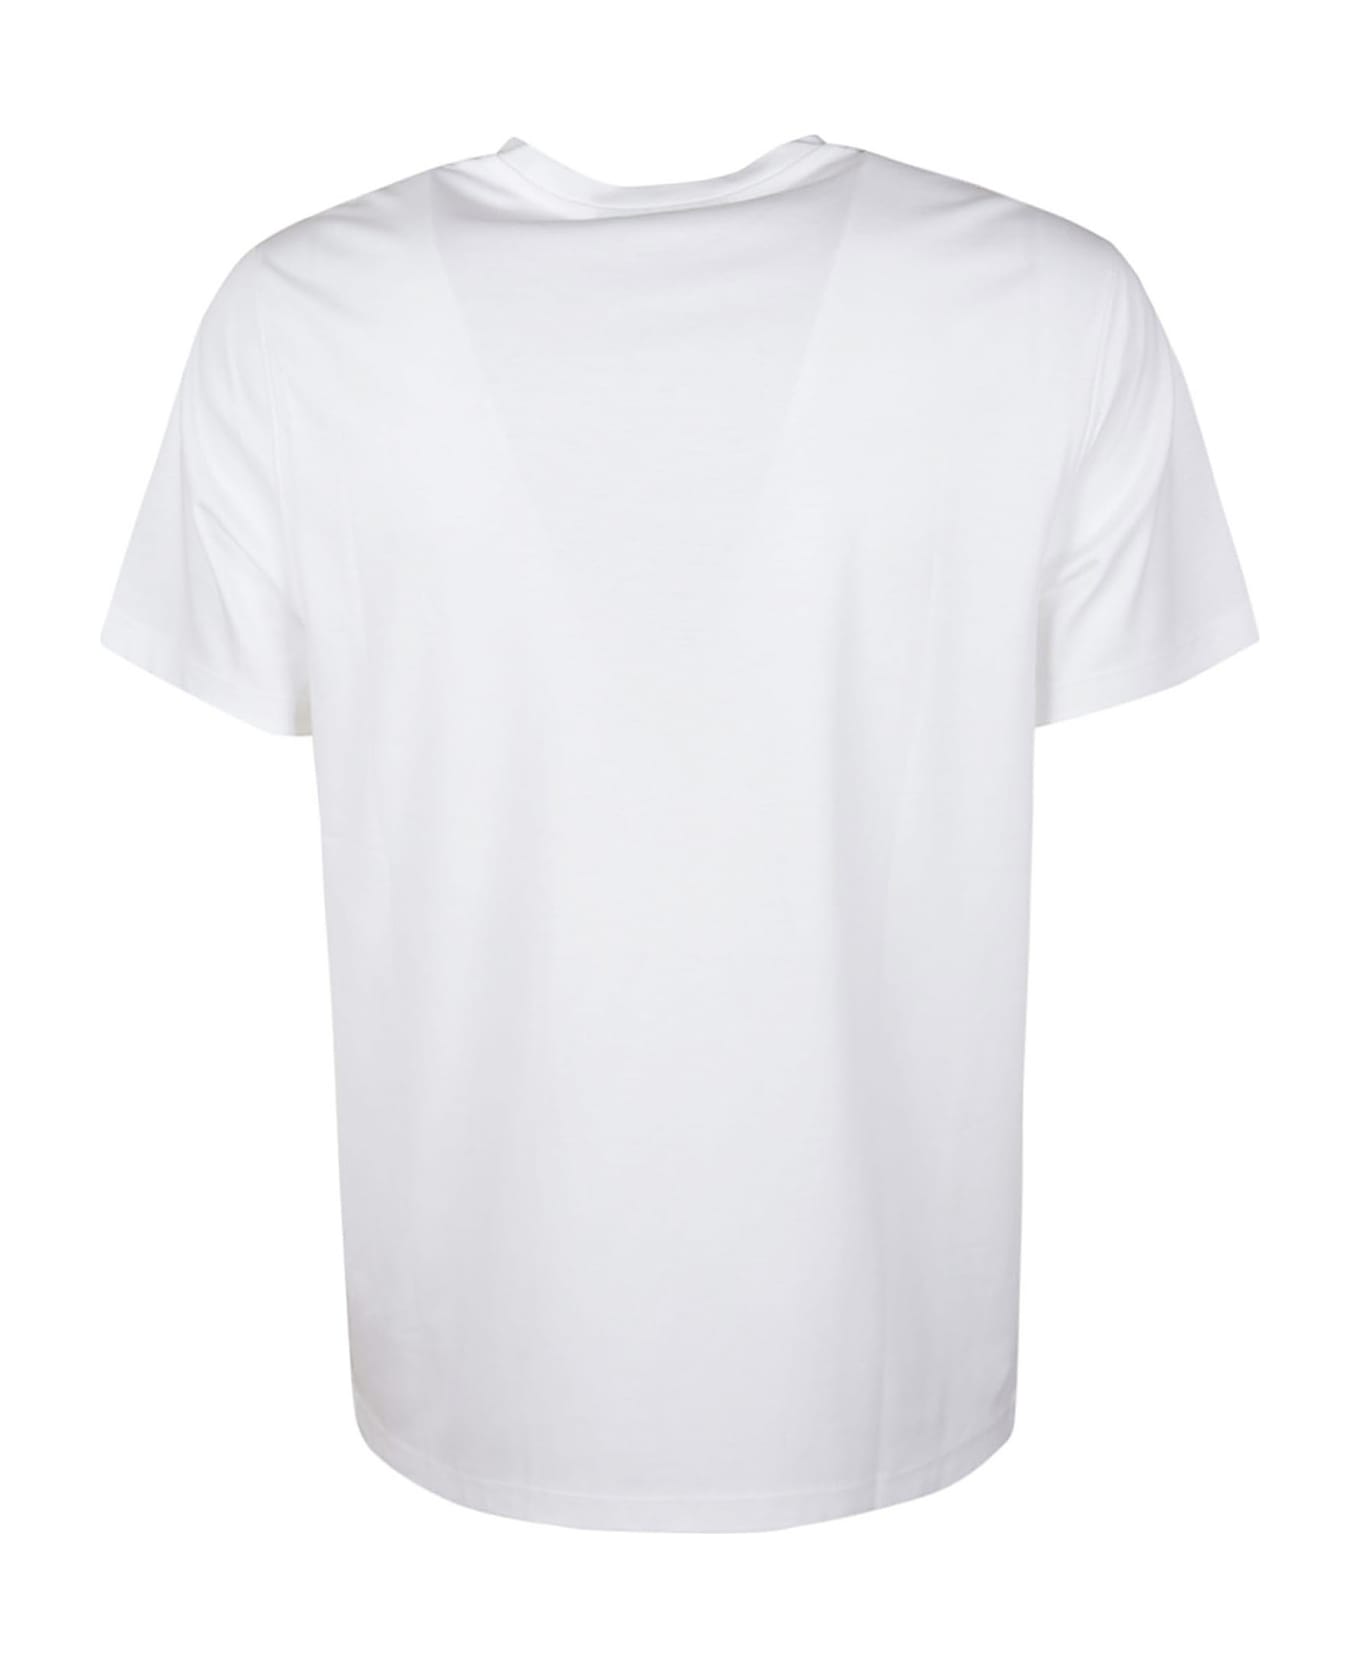 Michael Kors Round Neck T-shirt - White シャツ